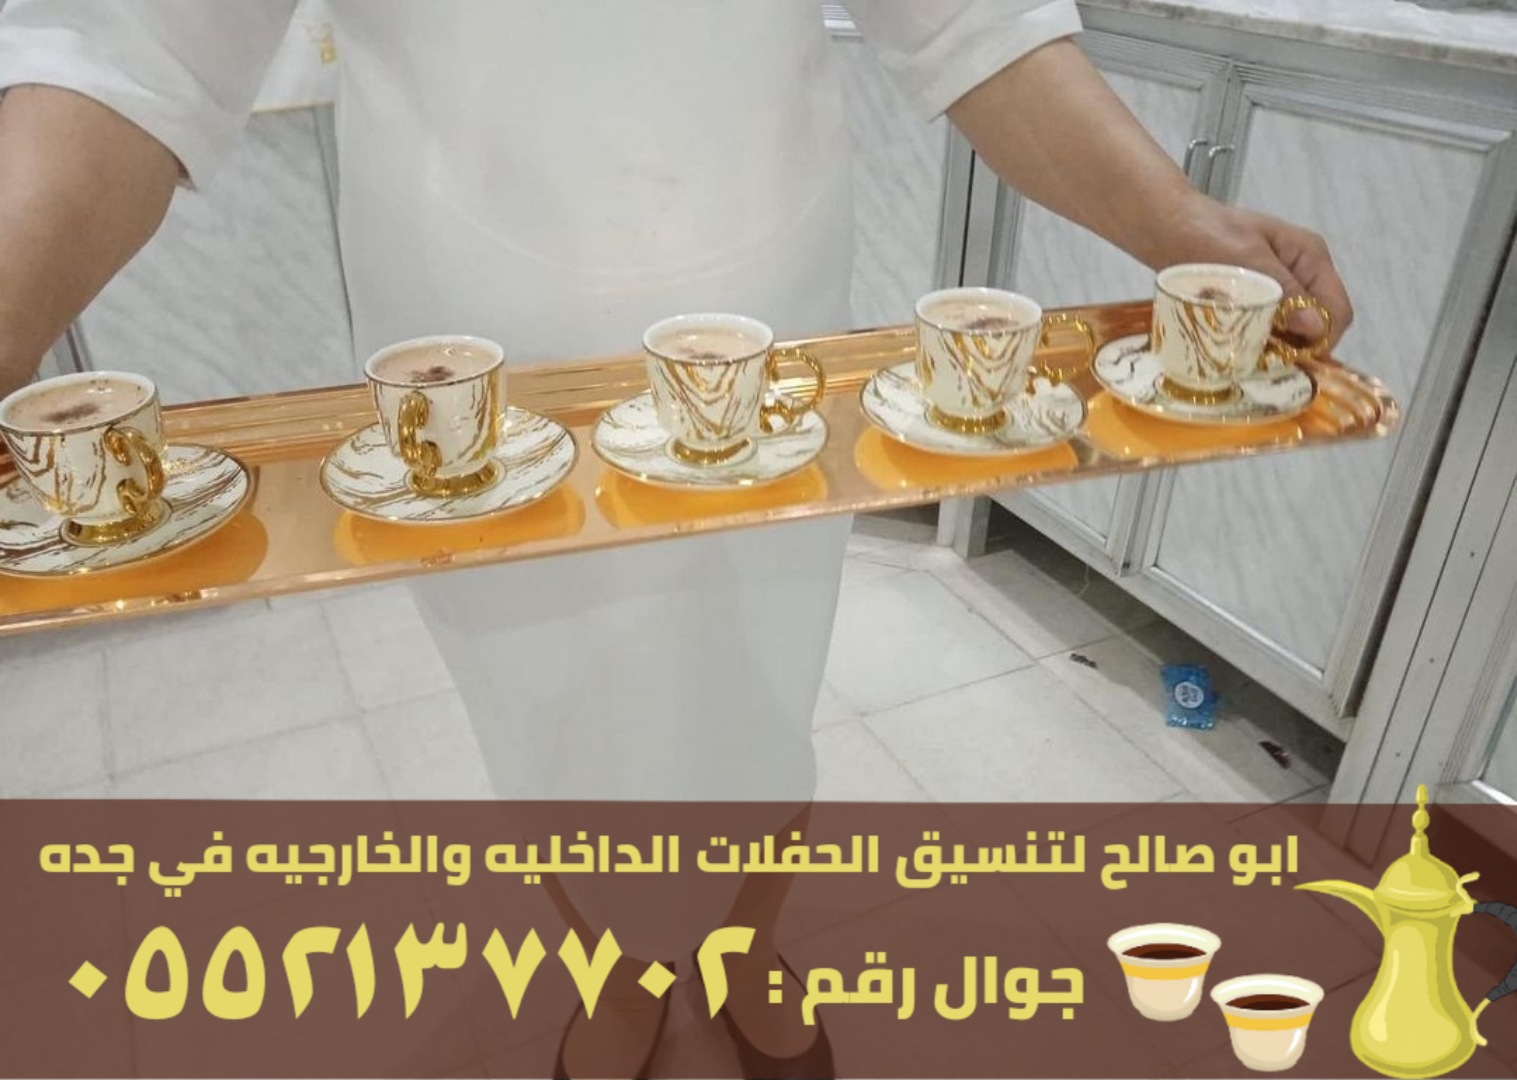 مباشرين قهوة و قهوجيين في جدة, 0552137702 P_263672i7r2